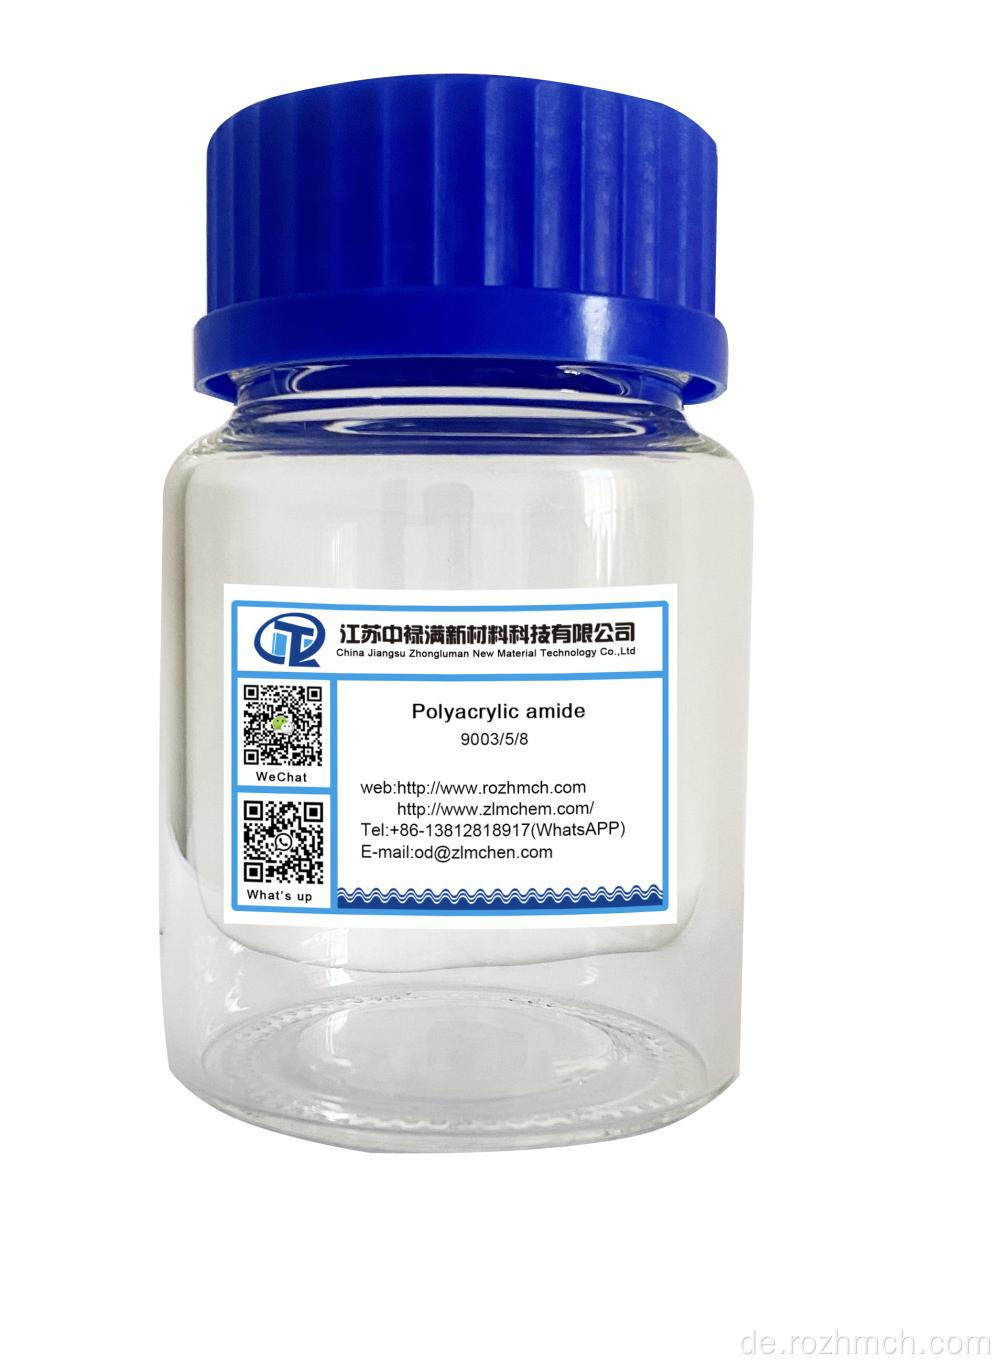 Polyacrylamid CAS Nr .:9003-05-8